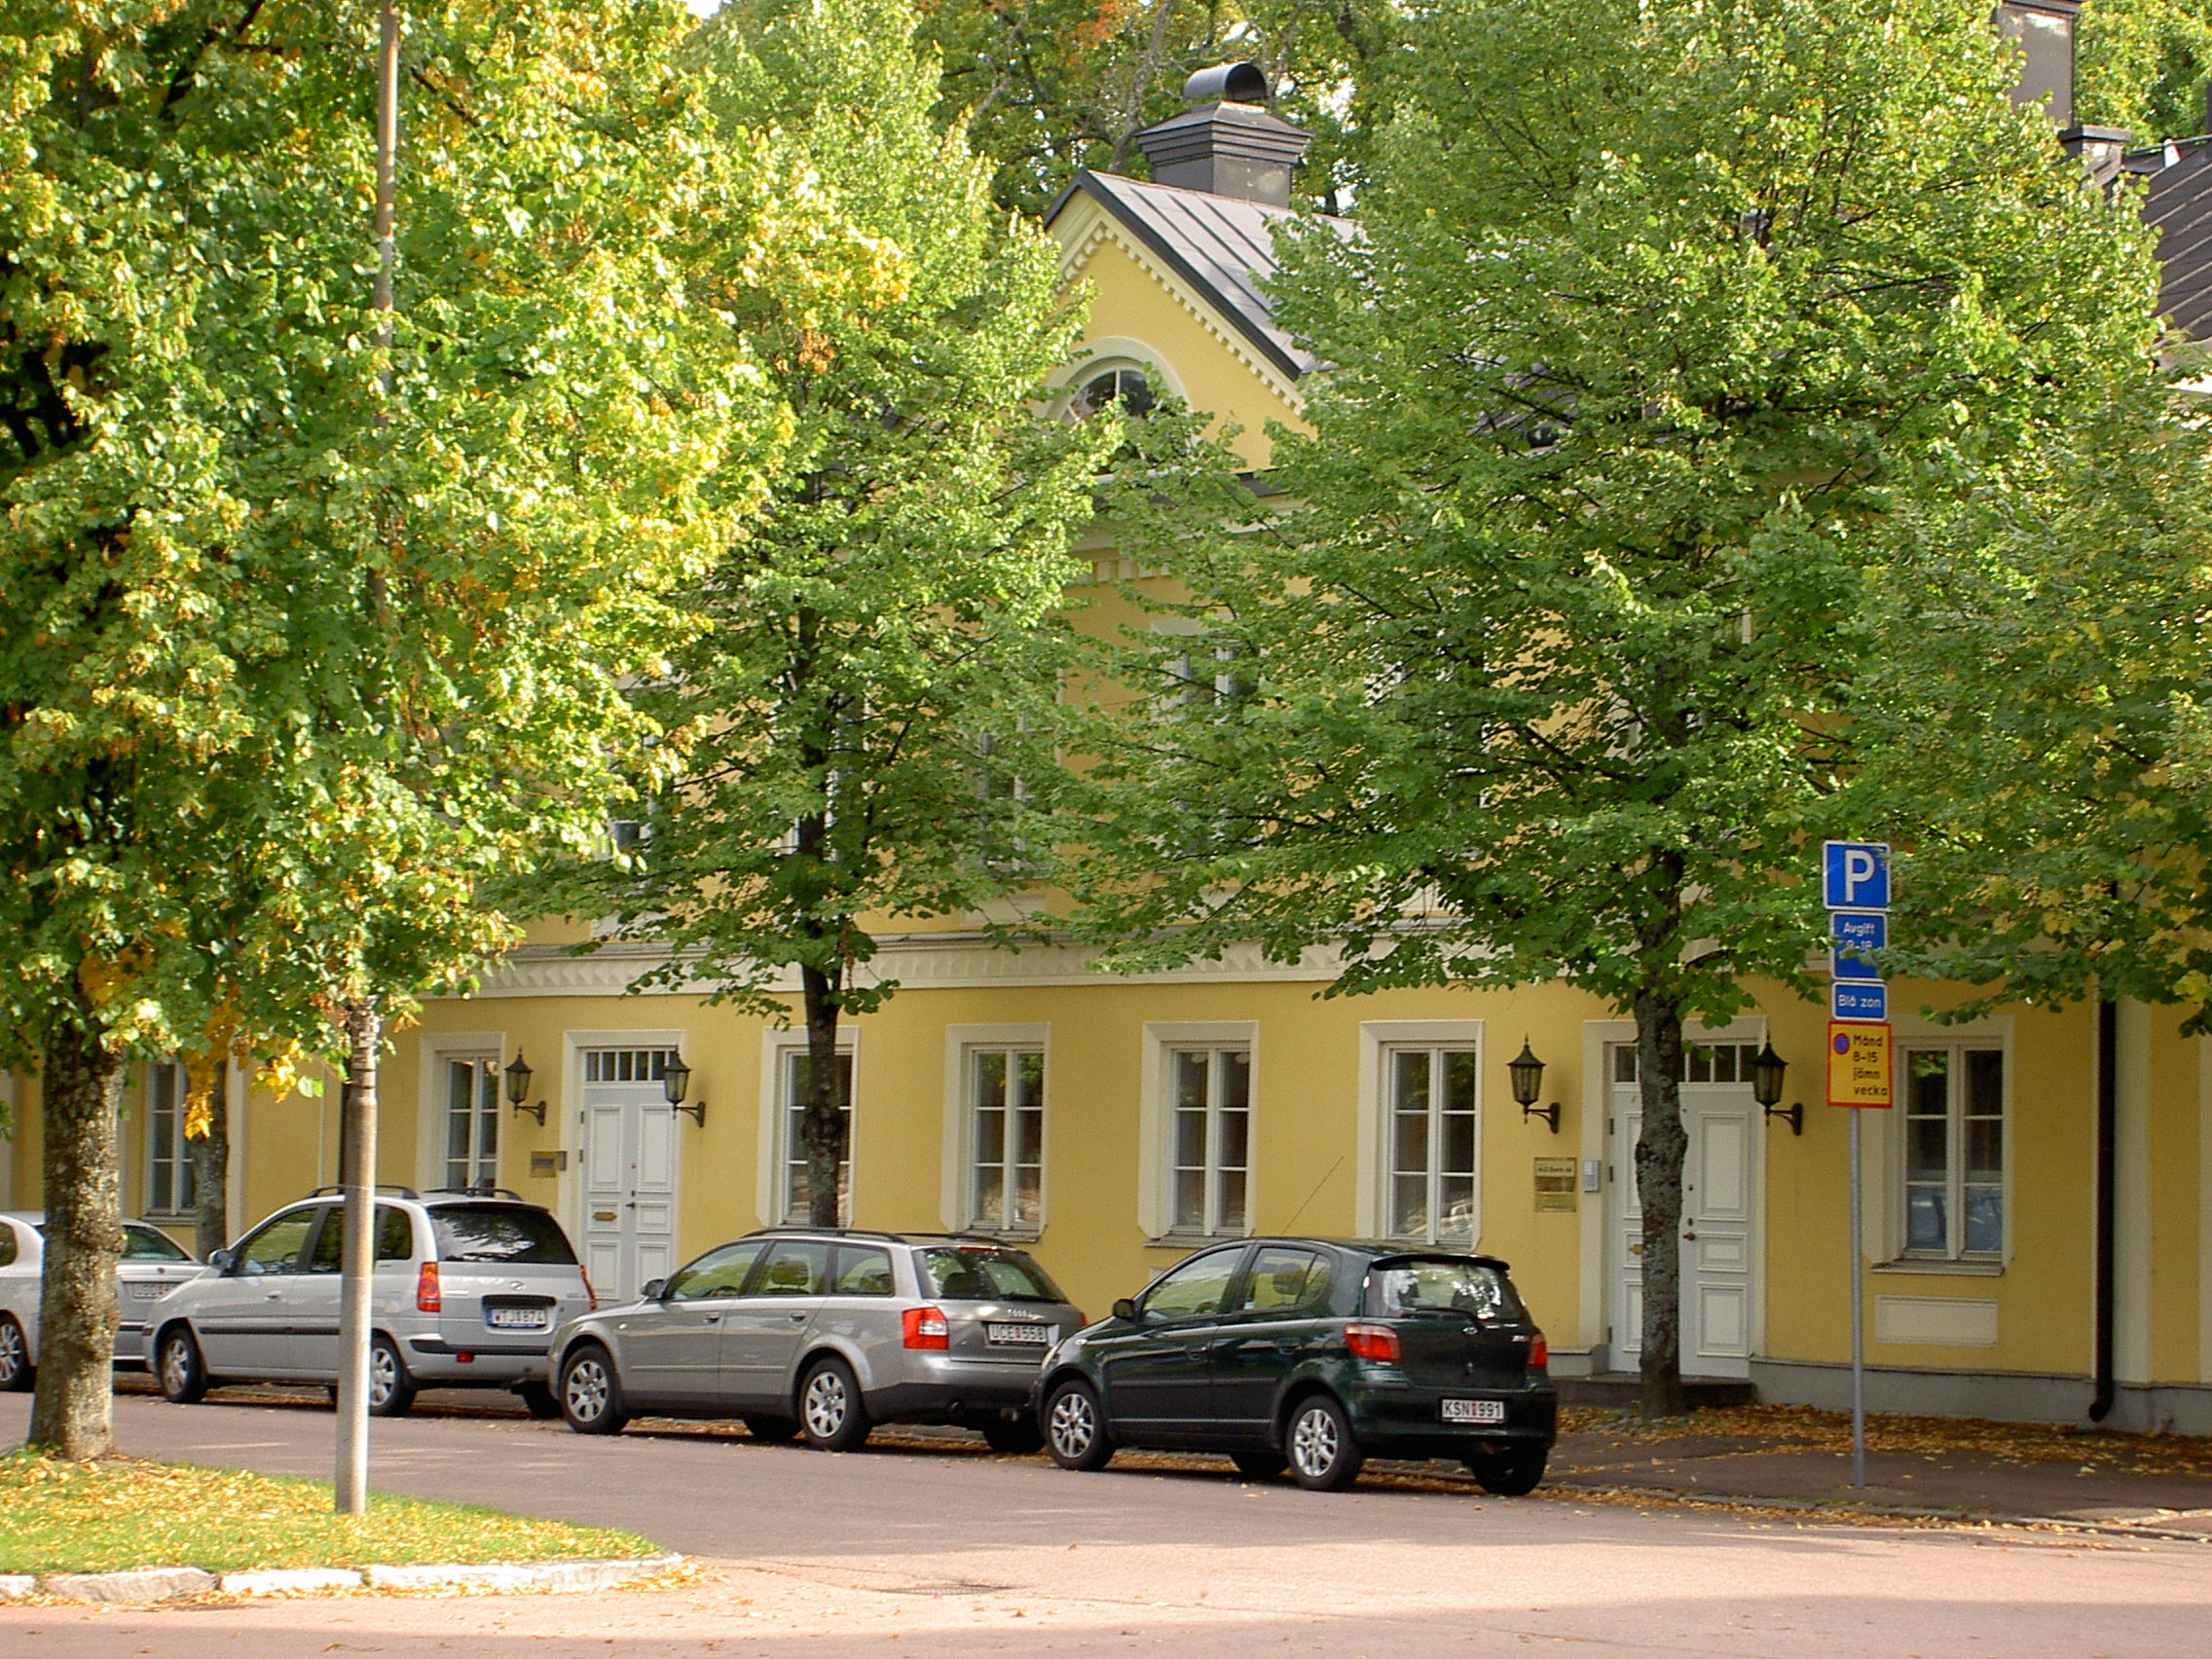 Entré till Ahlstrands Praktik, gult hus med gröna träd framför